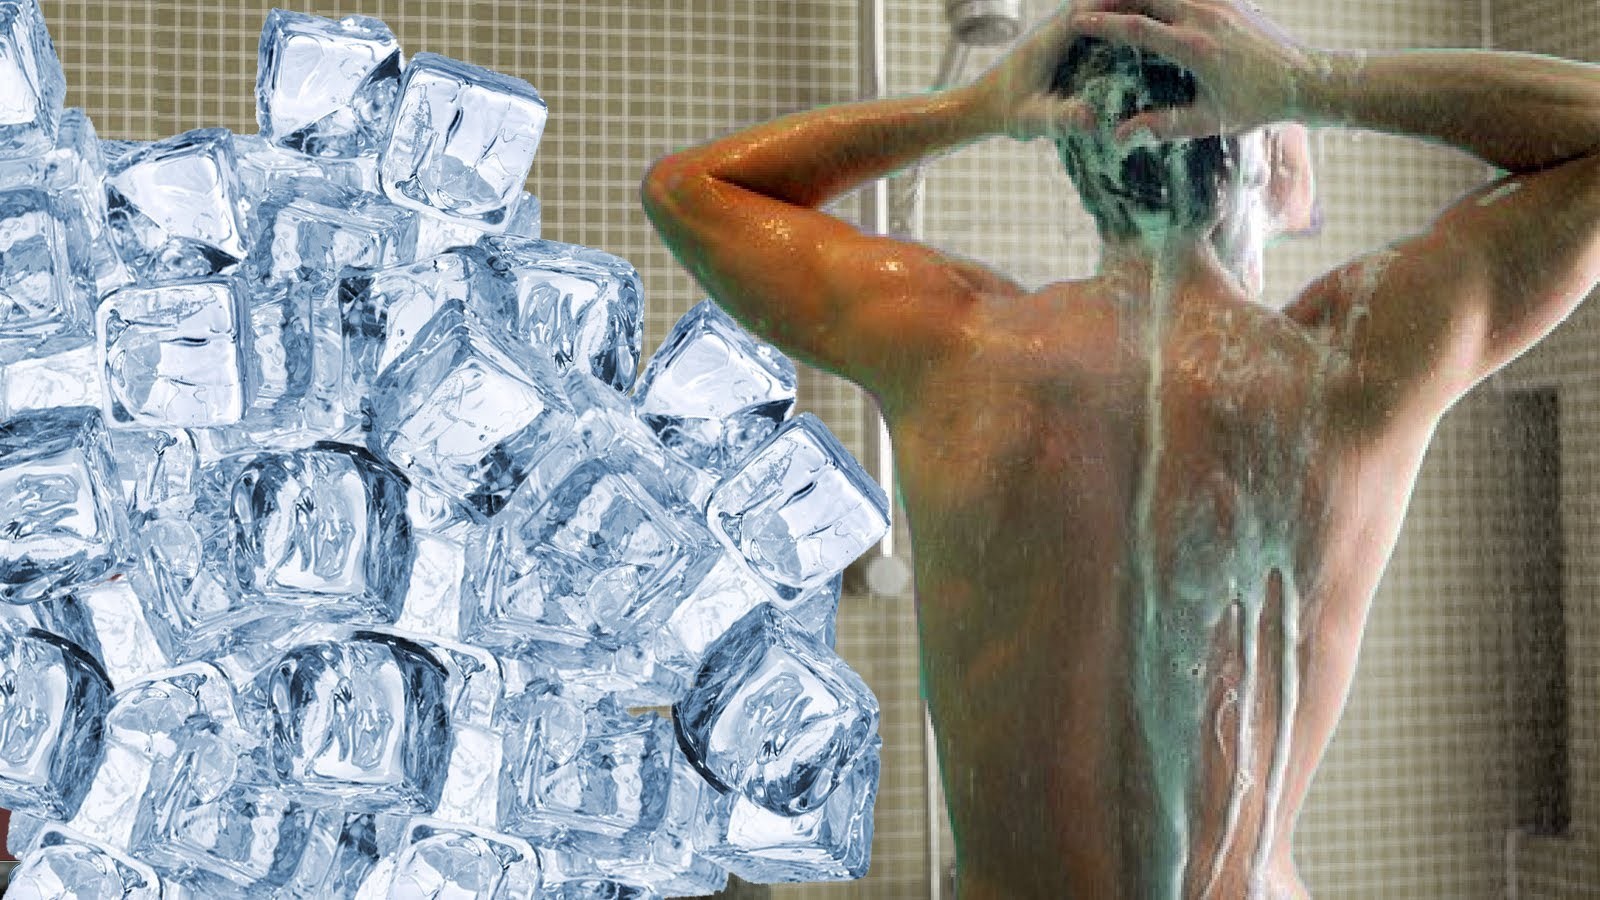 Broma con hielos a mi hermano mientras se baña | videos de risa, bromas pesadas en la ducha, golpes